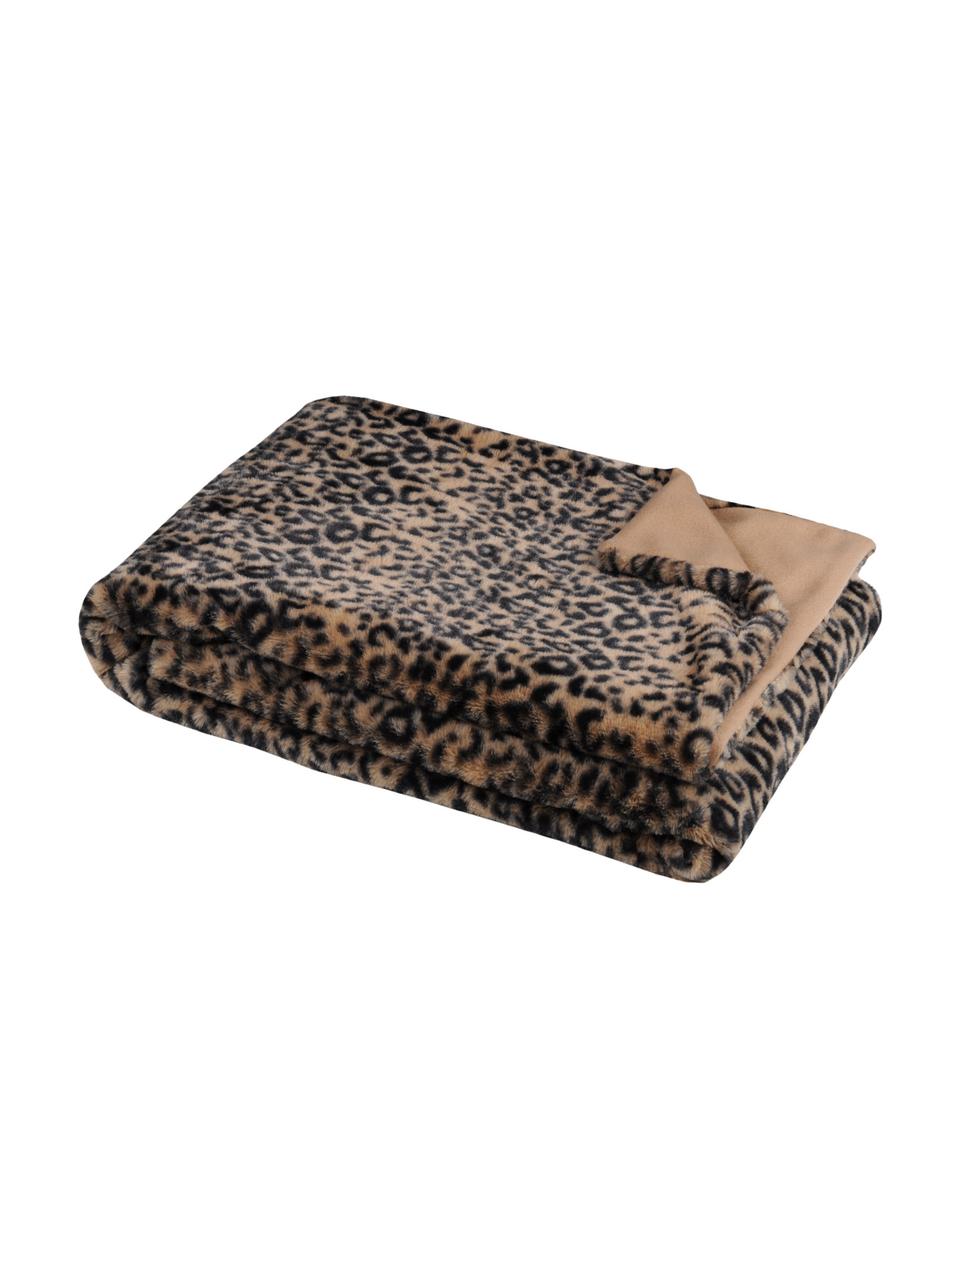 Plaid Jangal mit Leopardenmuster, 100% Polyester, Beige, Schwarz, 130 x 160 cm